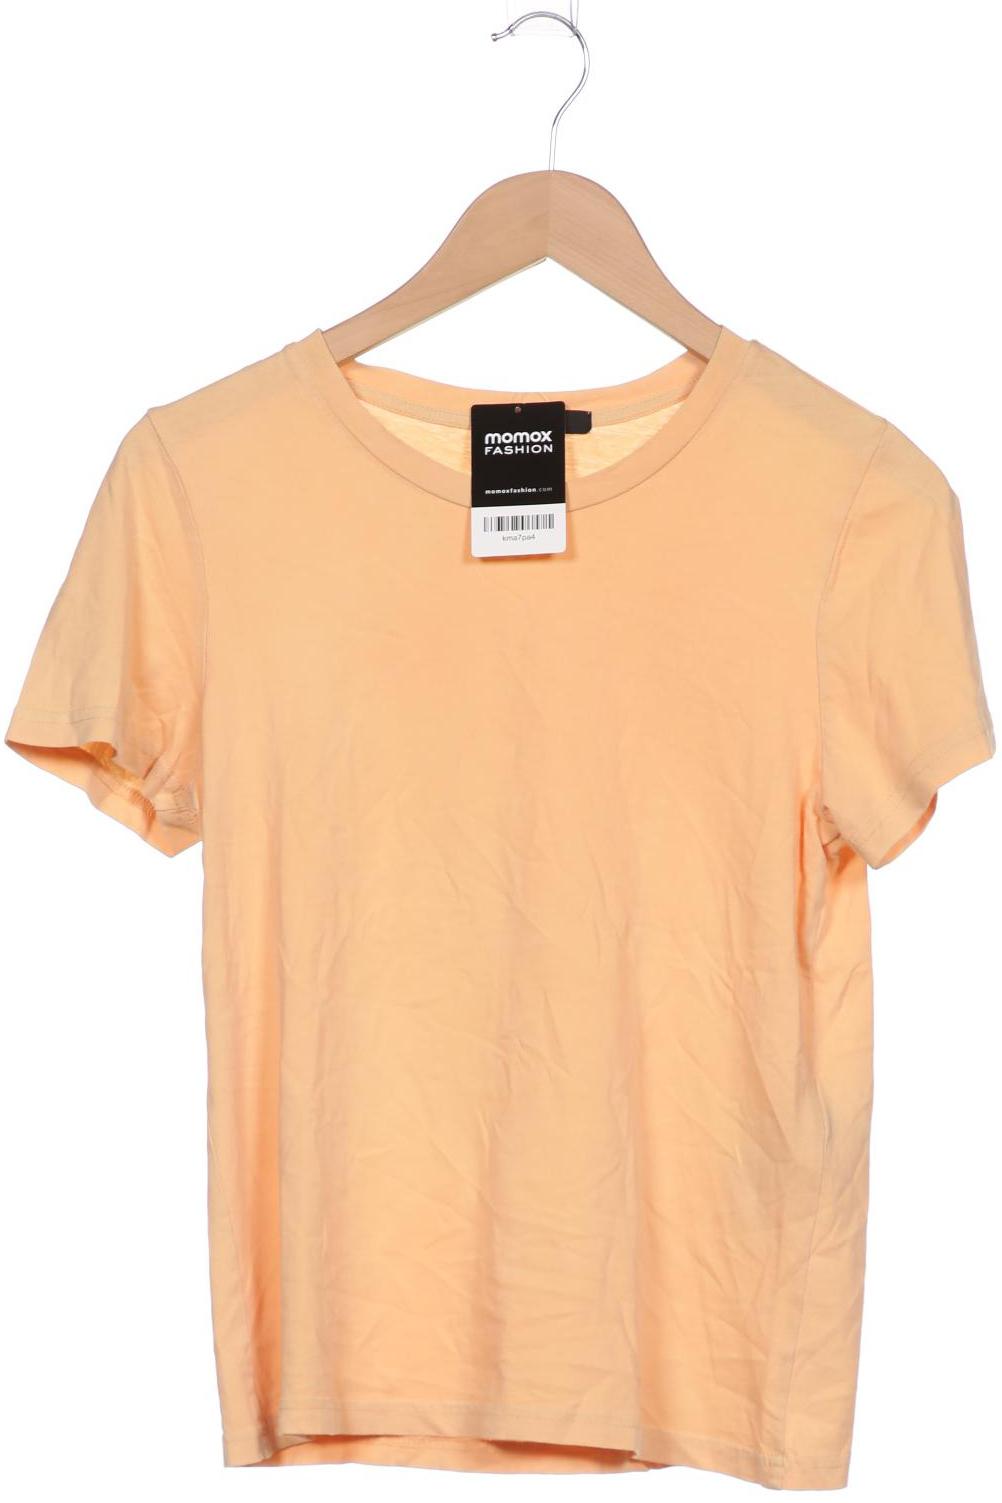 7 for all mankind Damen T-Shirt, orange von 7 For All Mankind